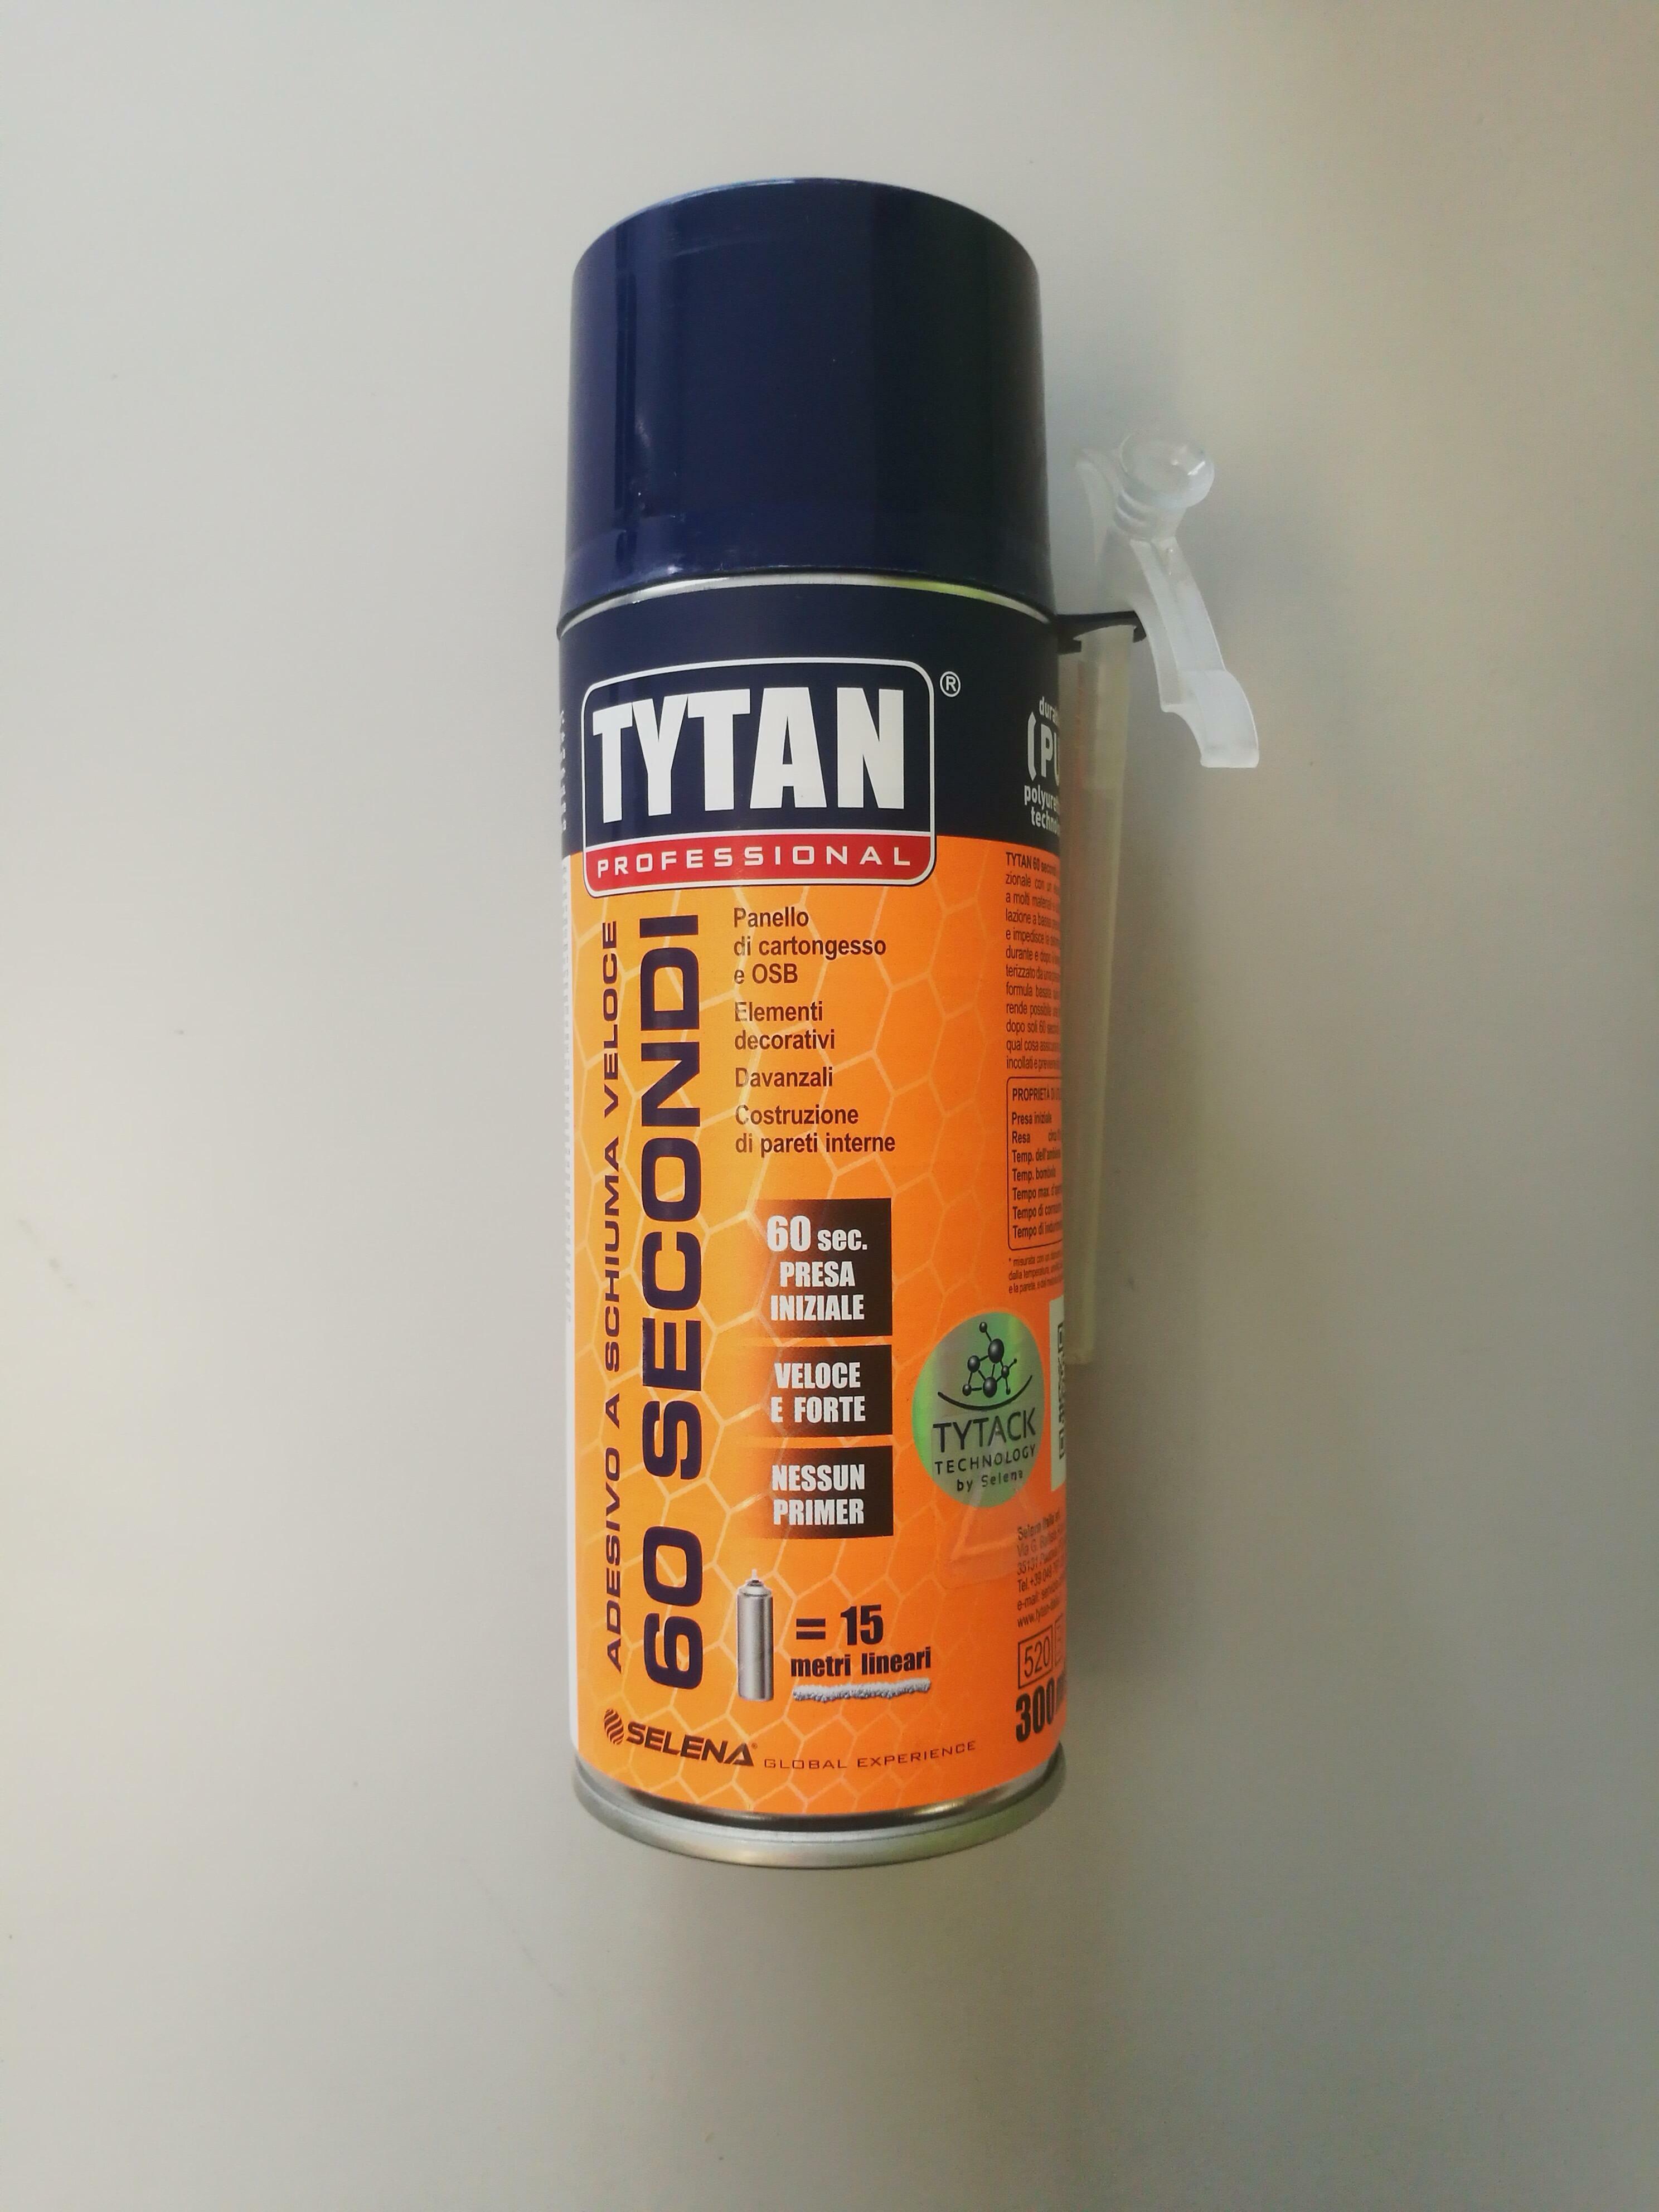 tytan professional tytan professional tytan prof.adesivo a schiuma veloce 60sec. 750ml cod.92932